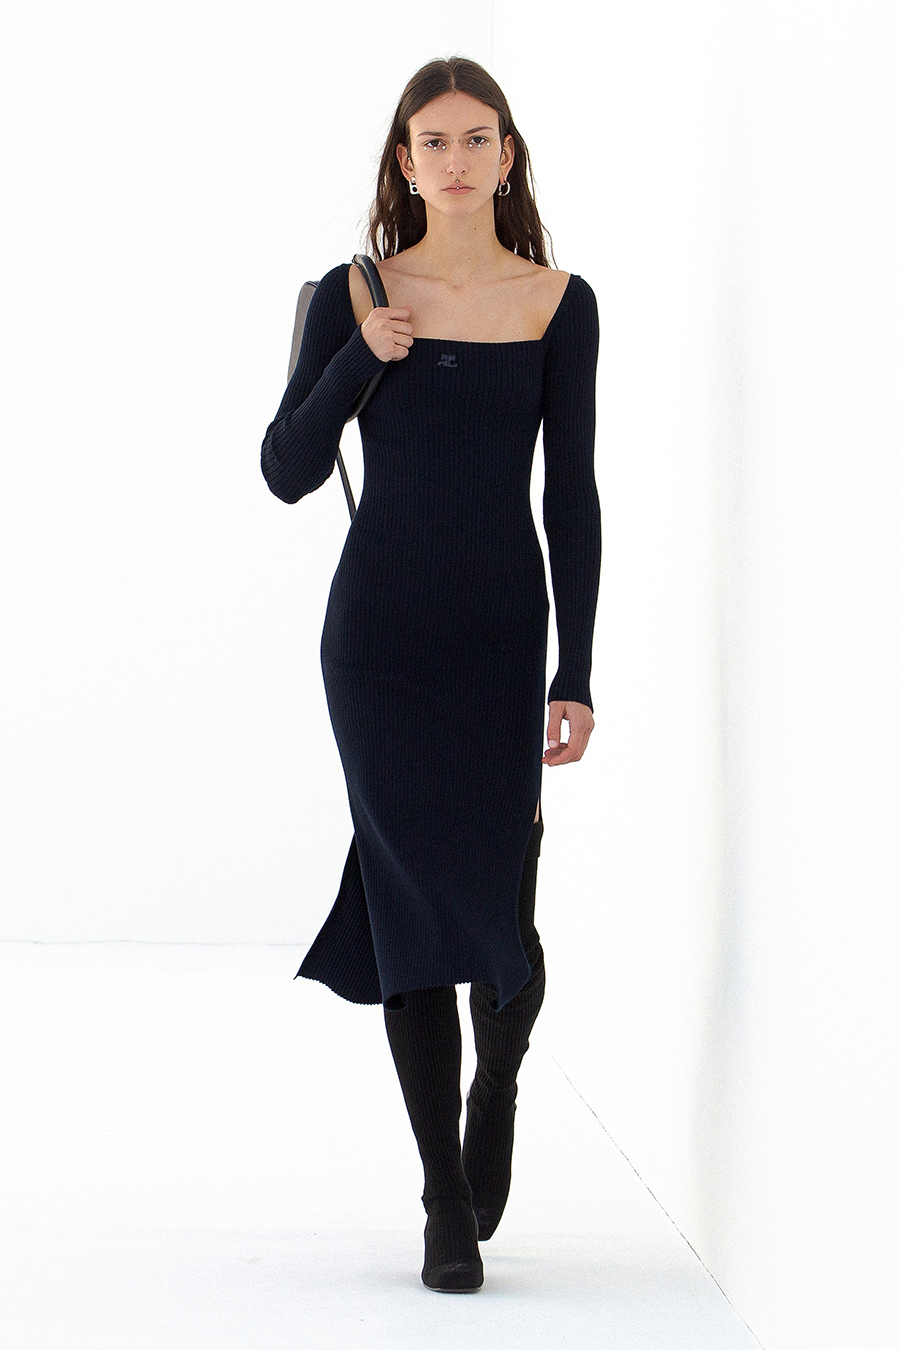 самое модное трикотажное вязаное платье осень 2021 зима 2022 черное праздничное нарядное с декольте 